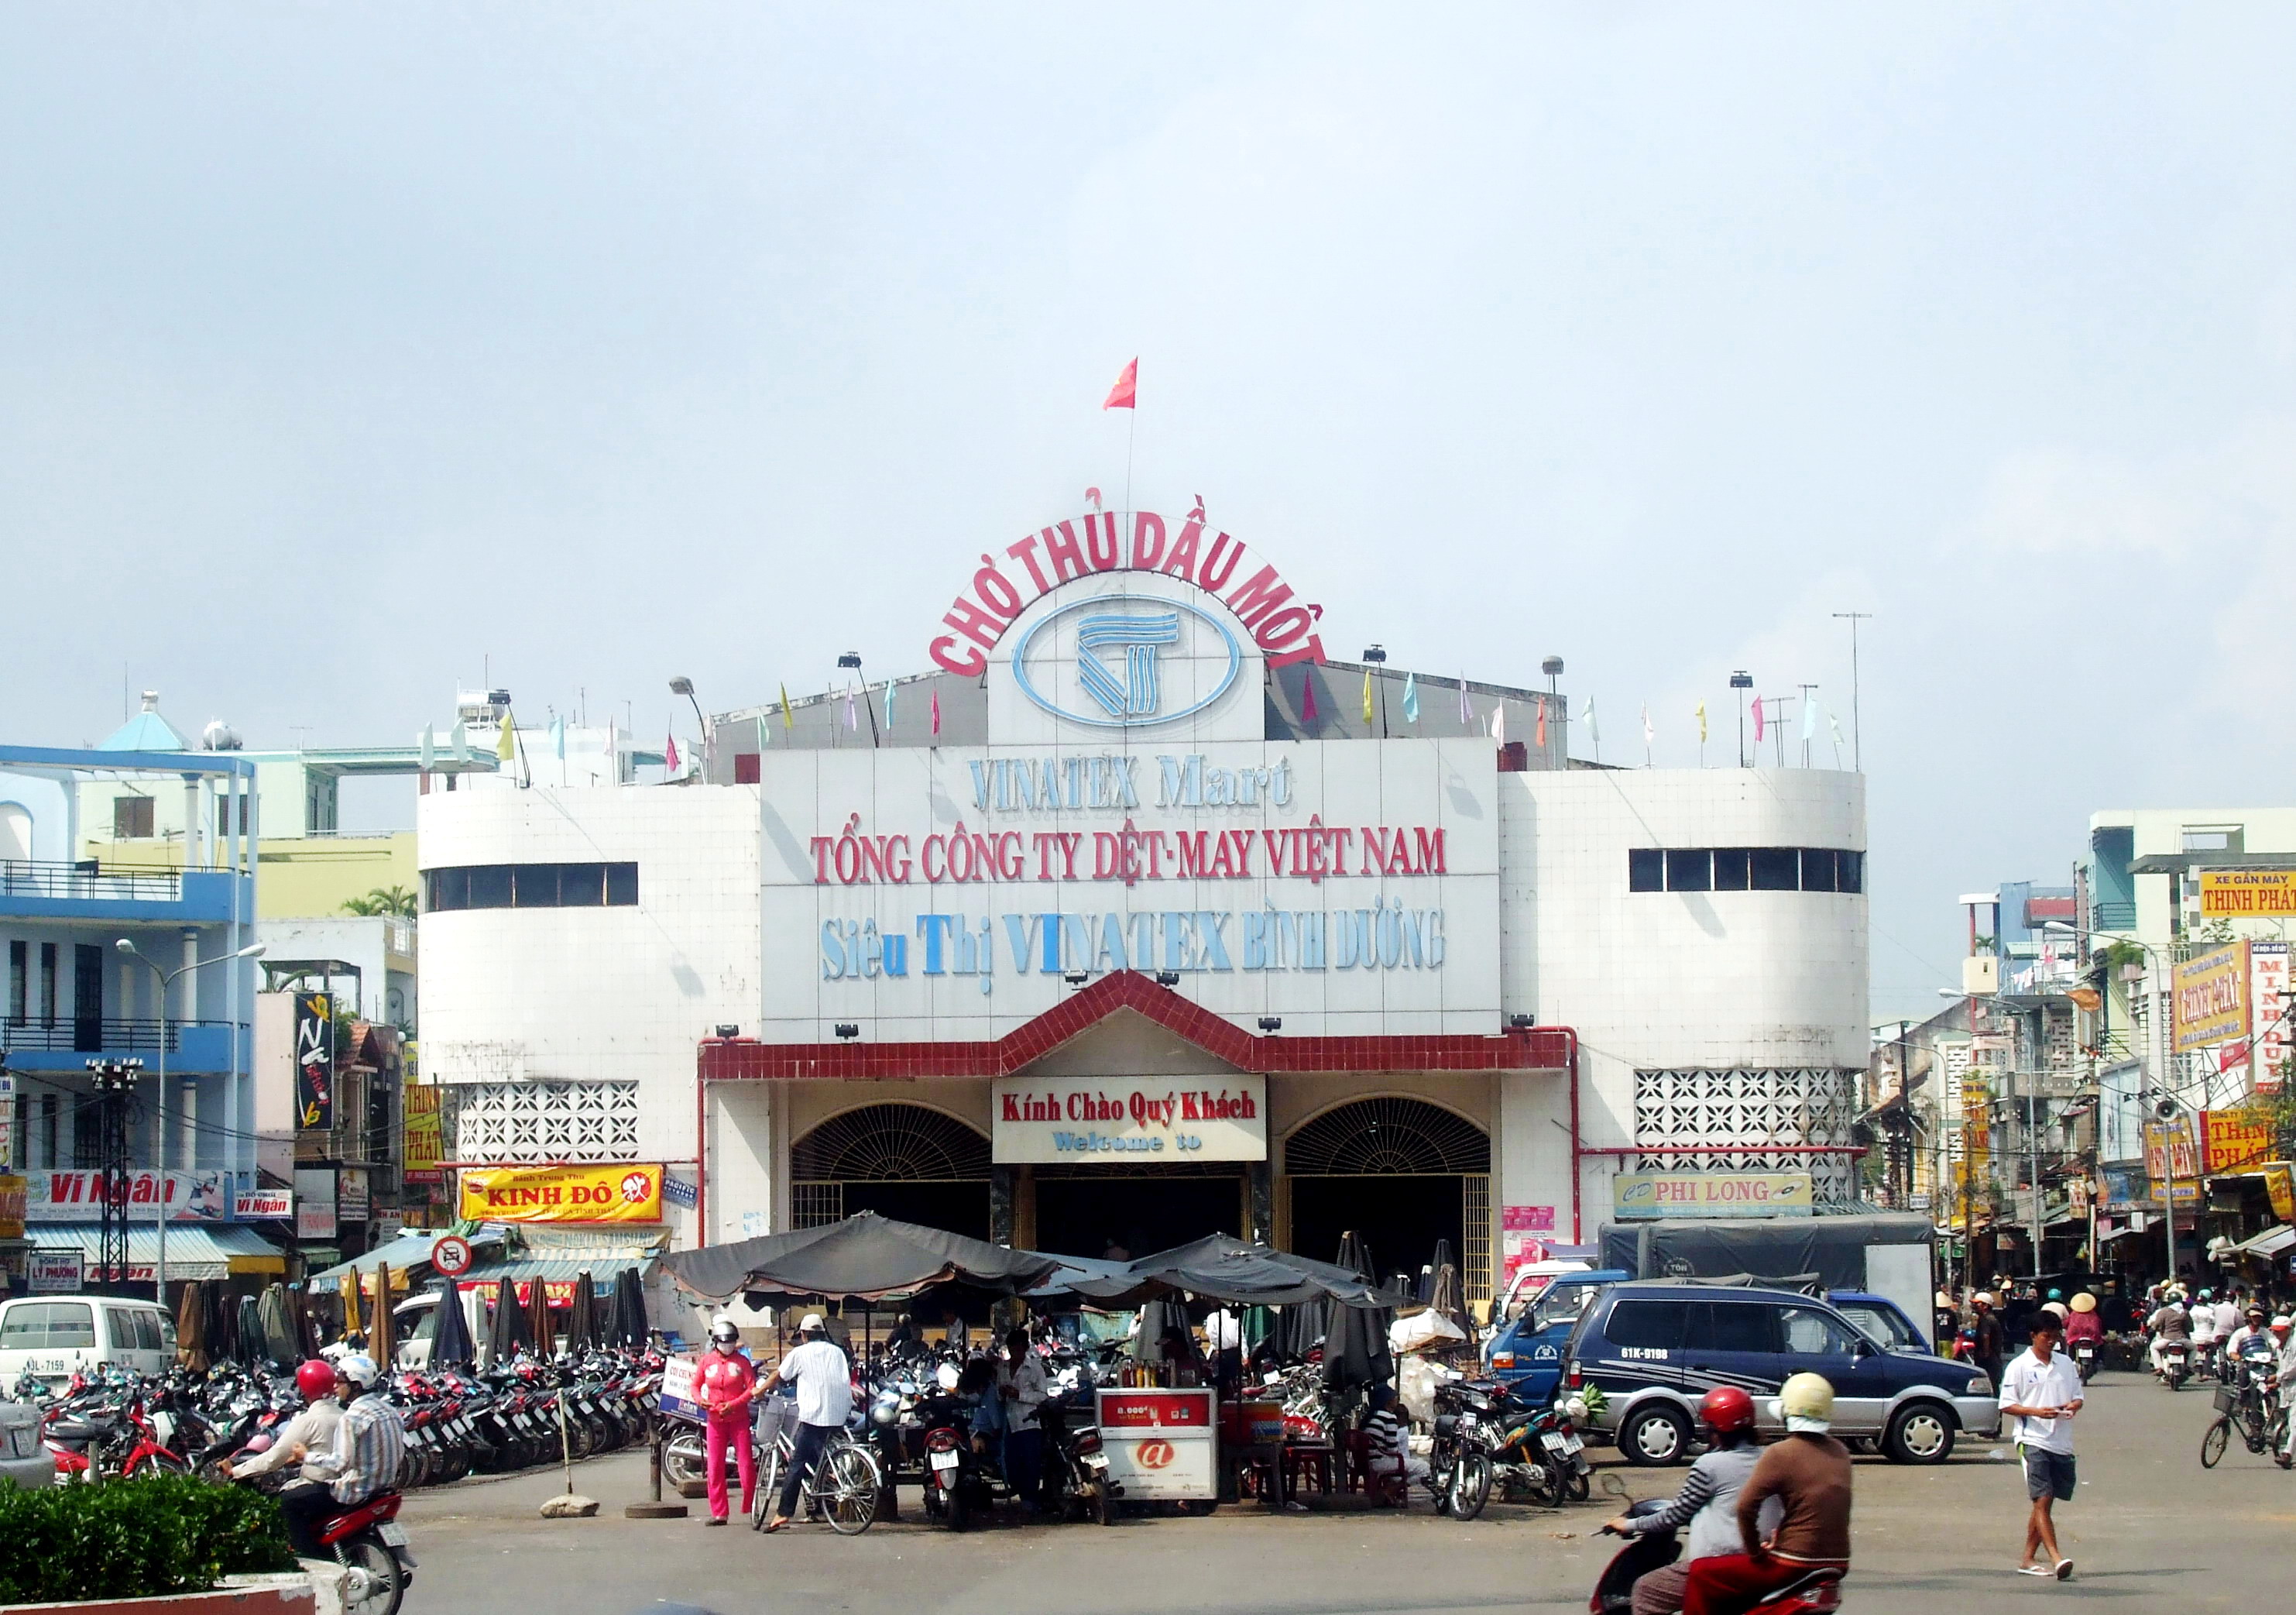 Danh sách chợ ở Bình Dương – Wikipedia tiếng Việt